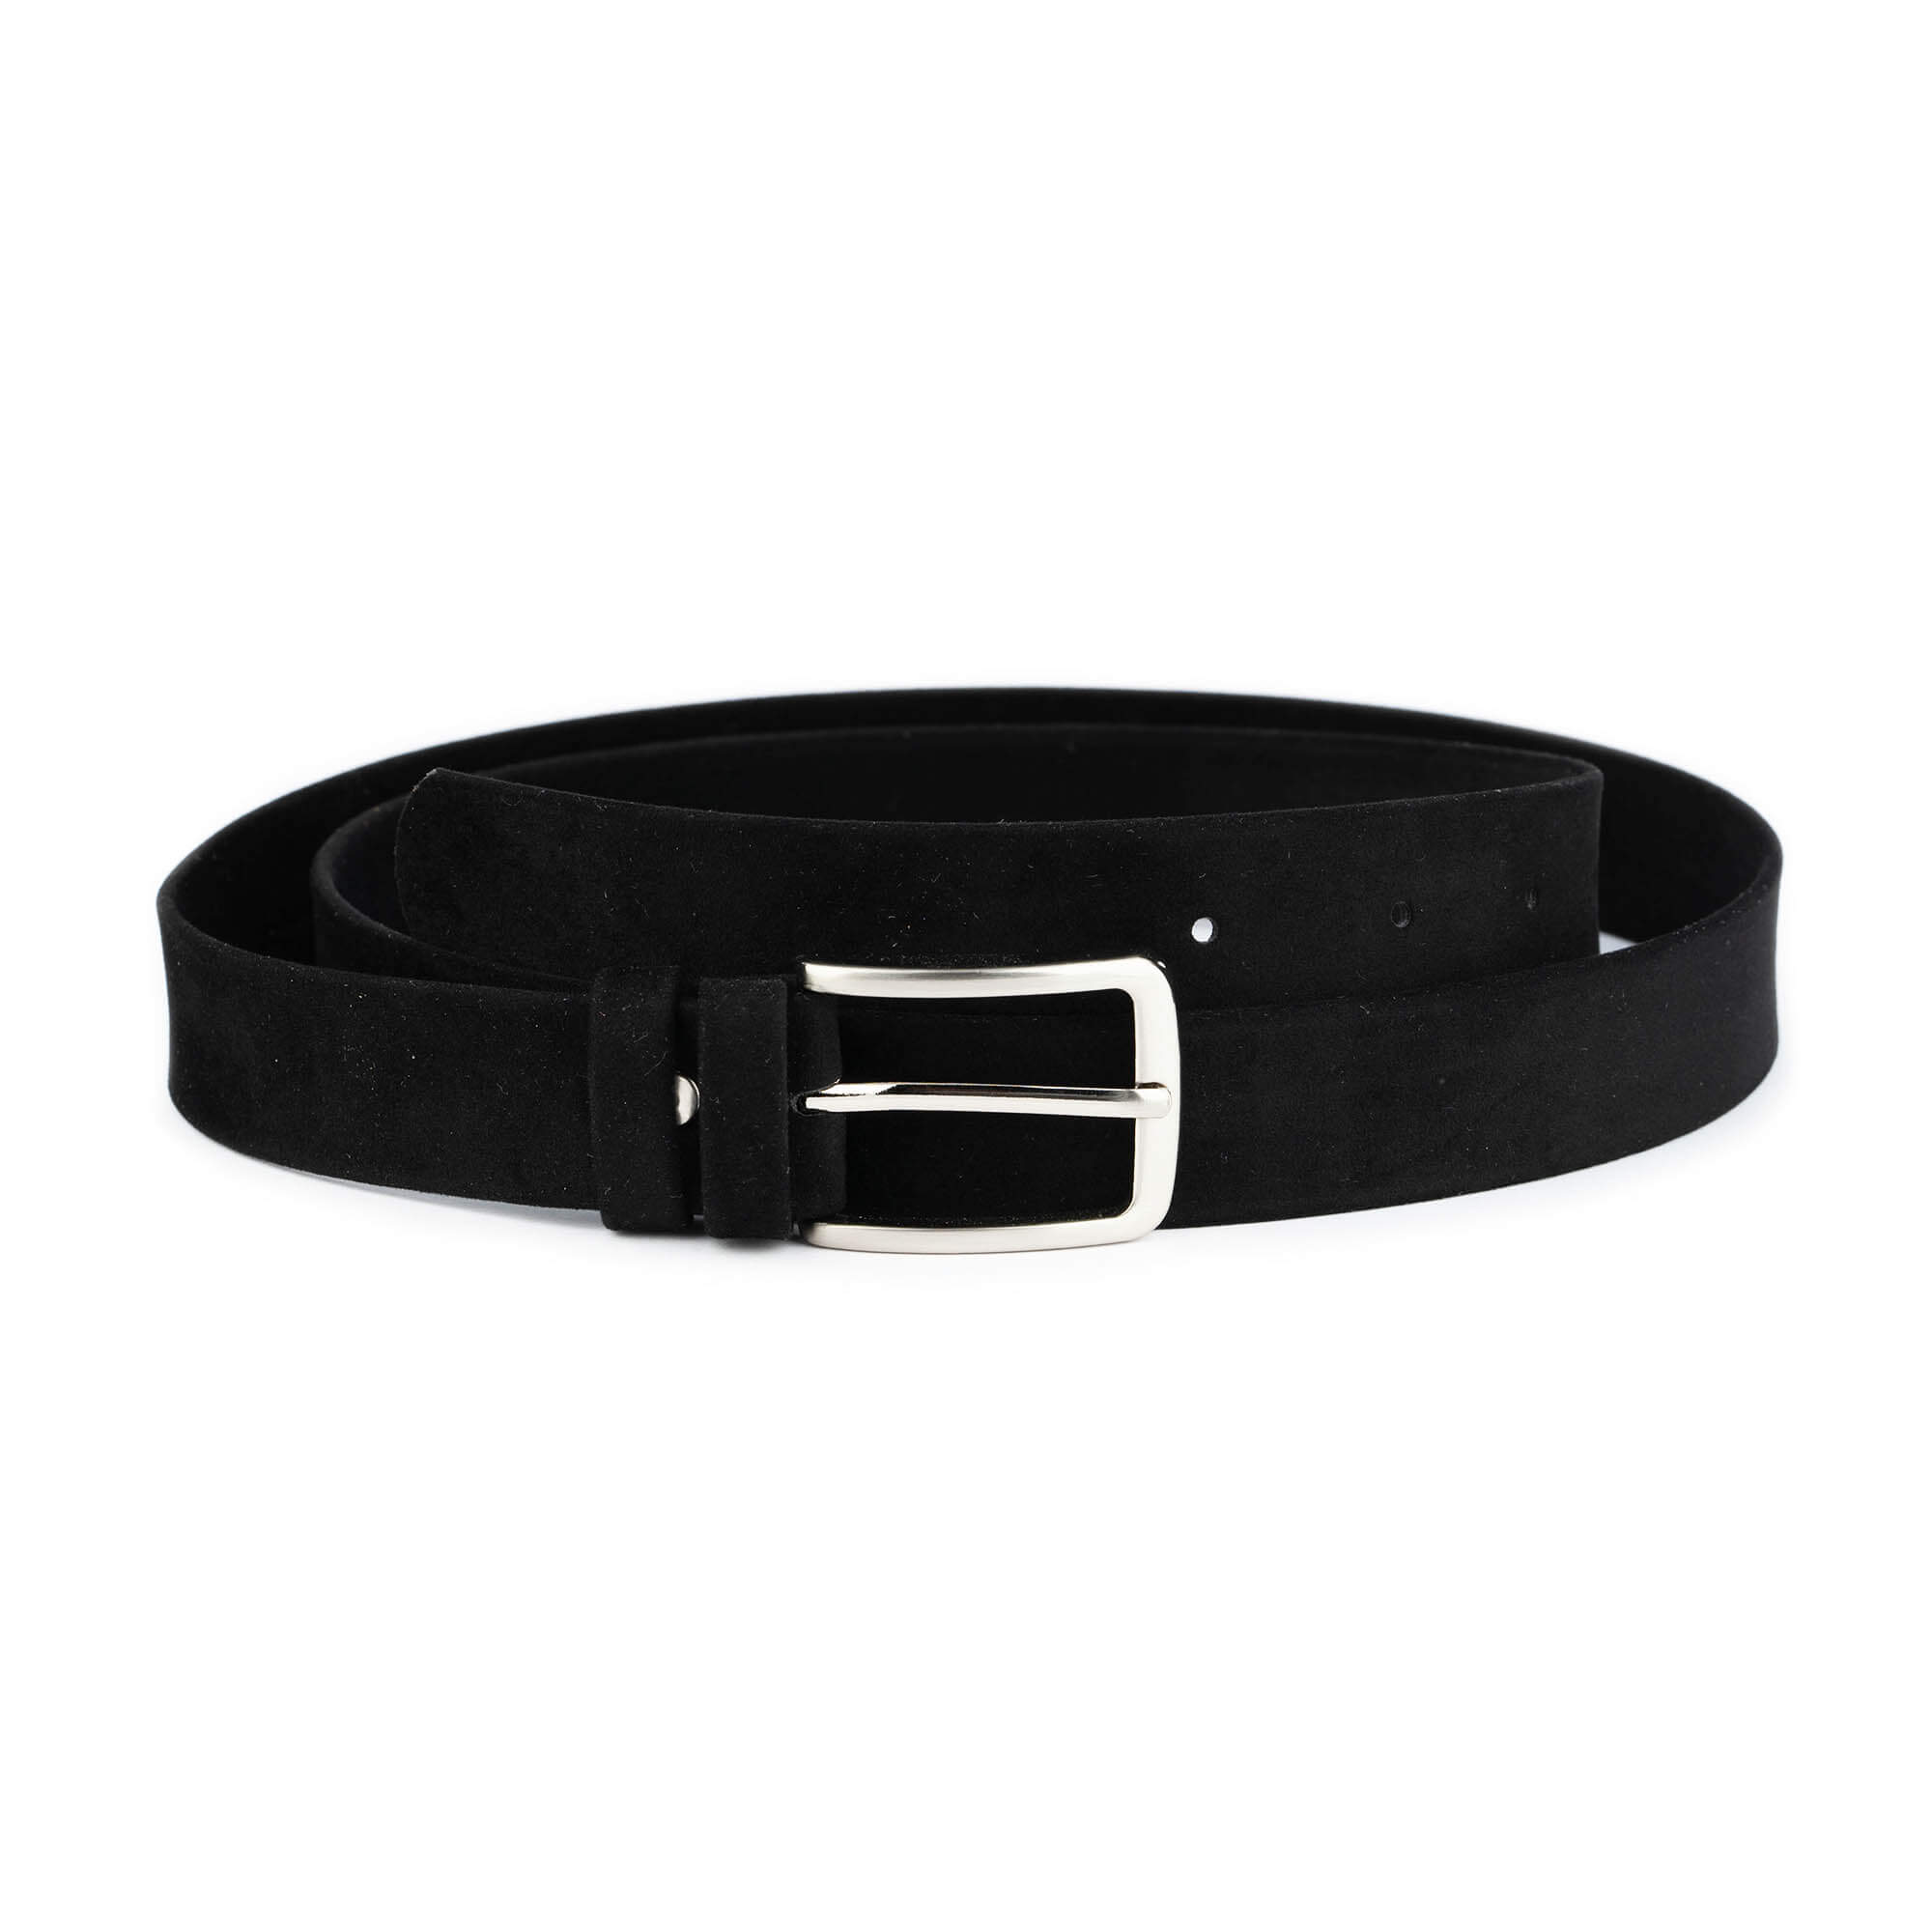 Black elastic velvet waist belt with gold clasp